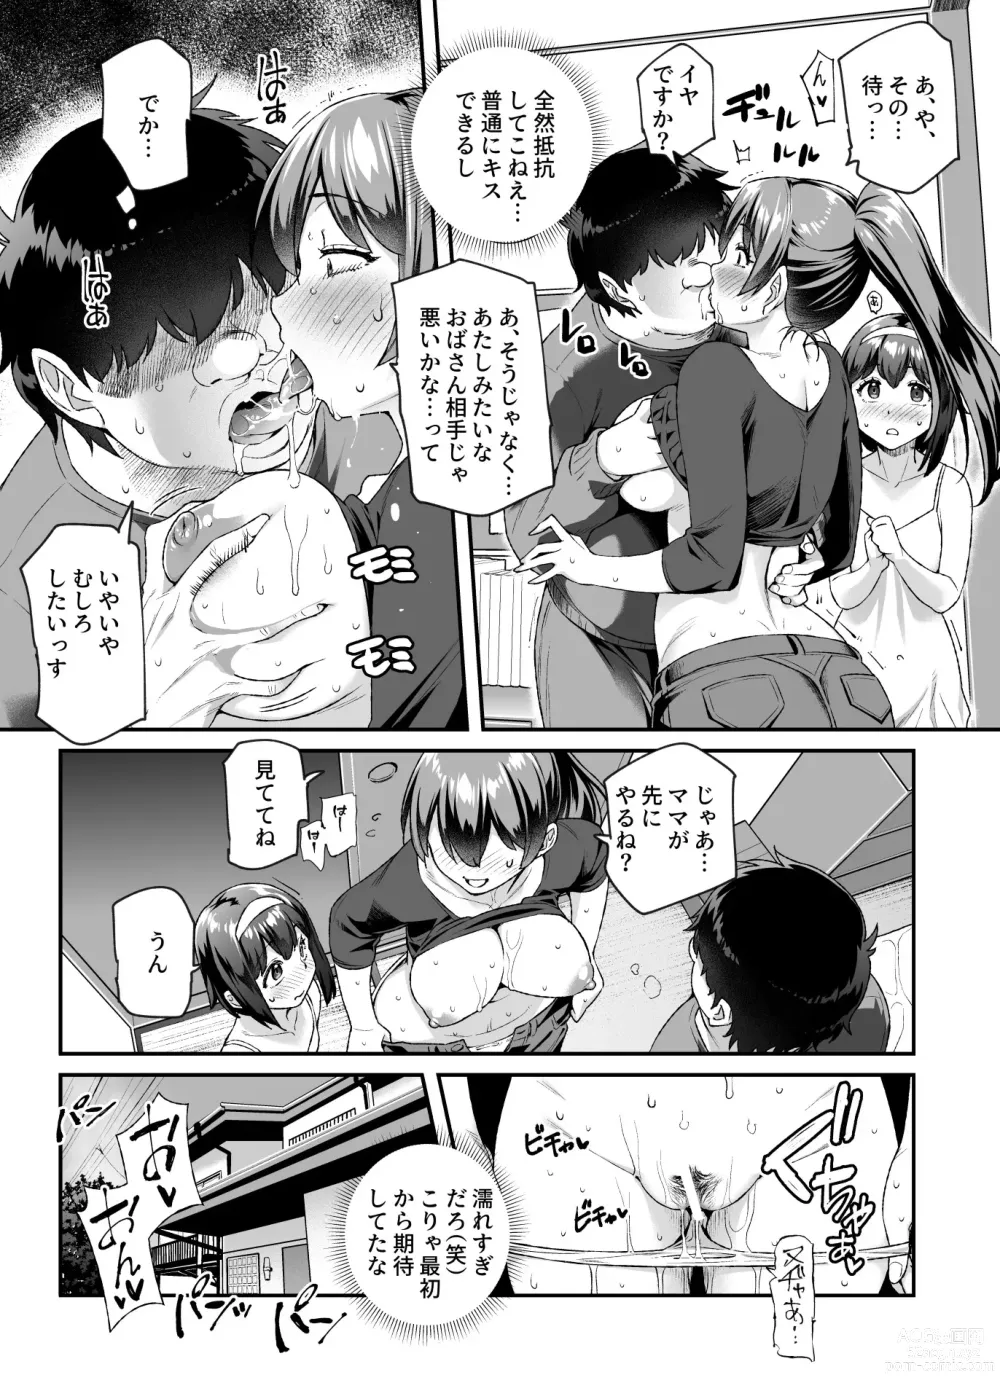 Page 38 of doujinshi Ore de Shojohaka Sureba Shiawase ninaruto Bazzutte EX